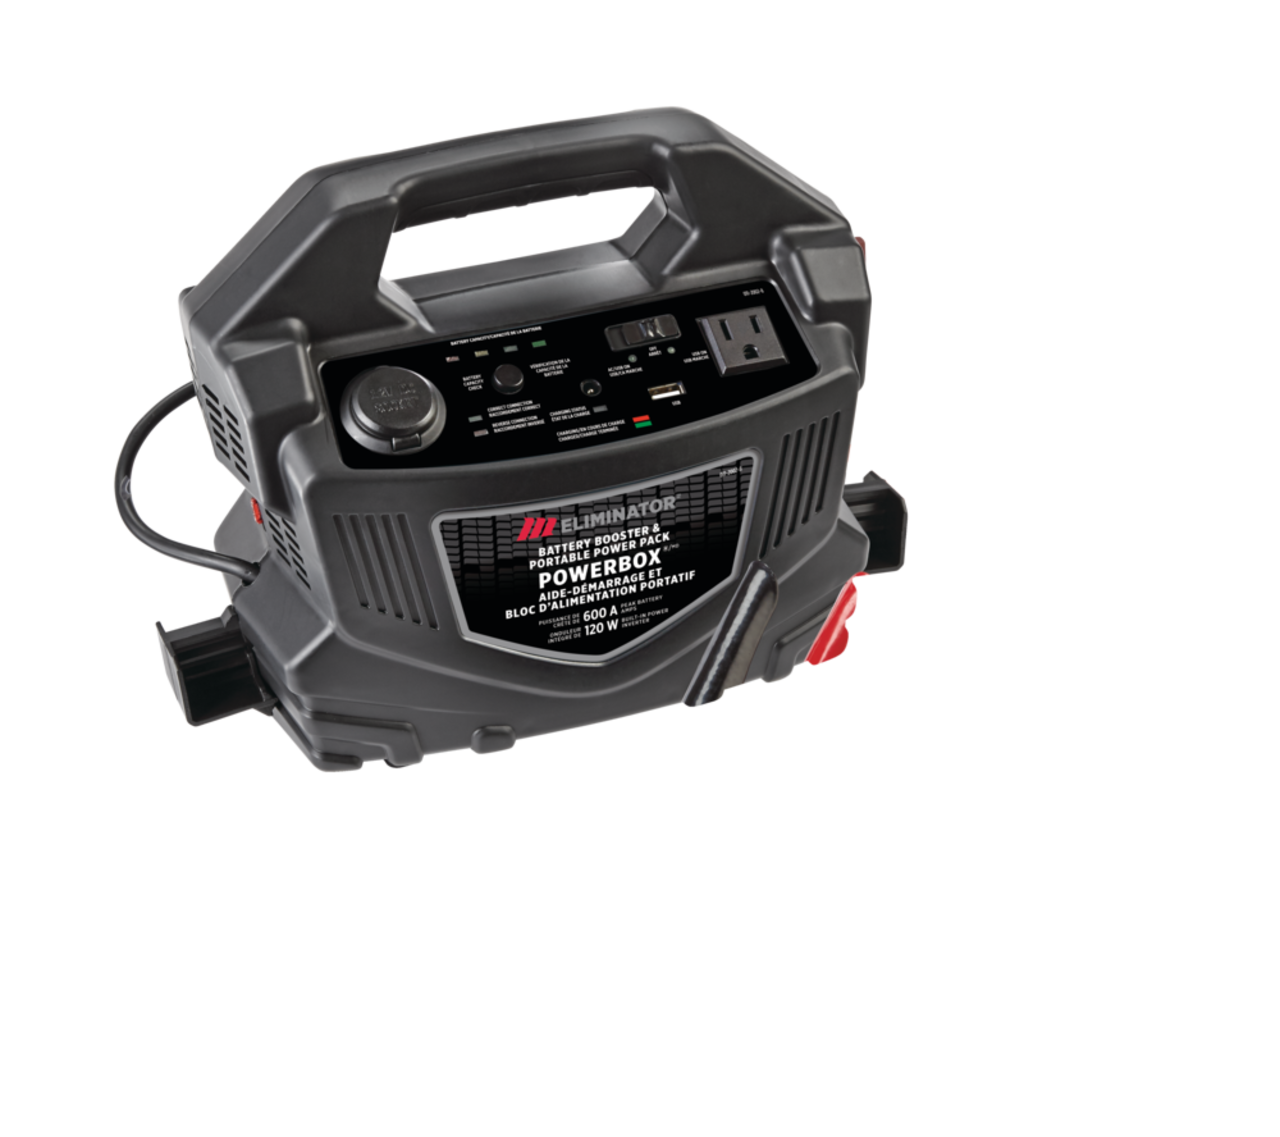 Bloc d'alimentation/démarreur portatif MotoMaster Eliminator PowerBoxMD,  puissance de crête de 600 A, 120 W